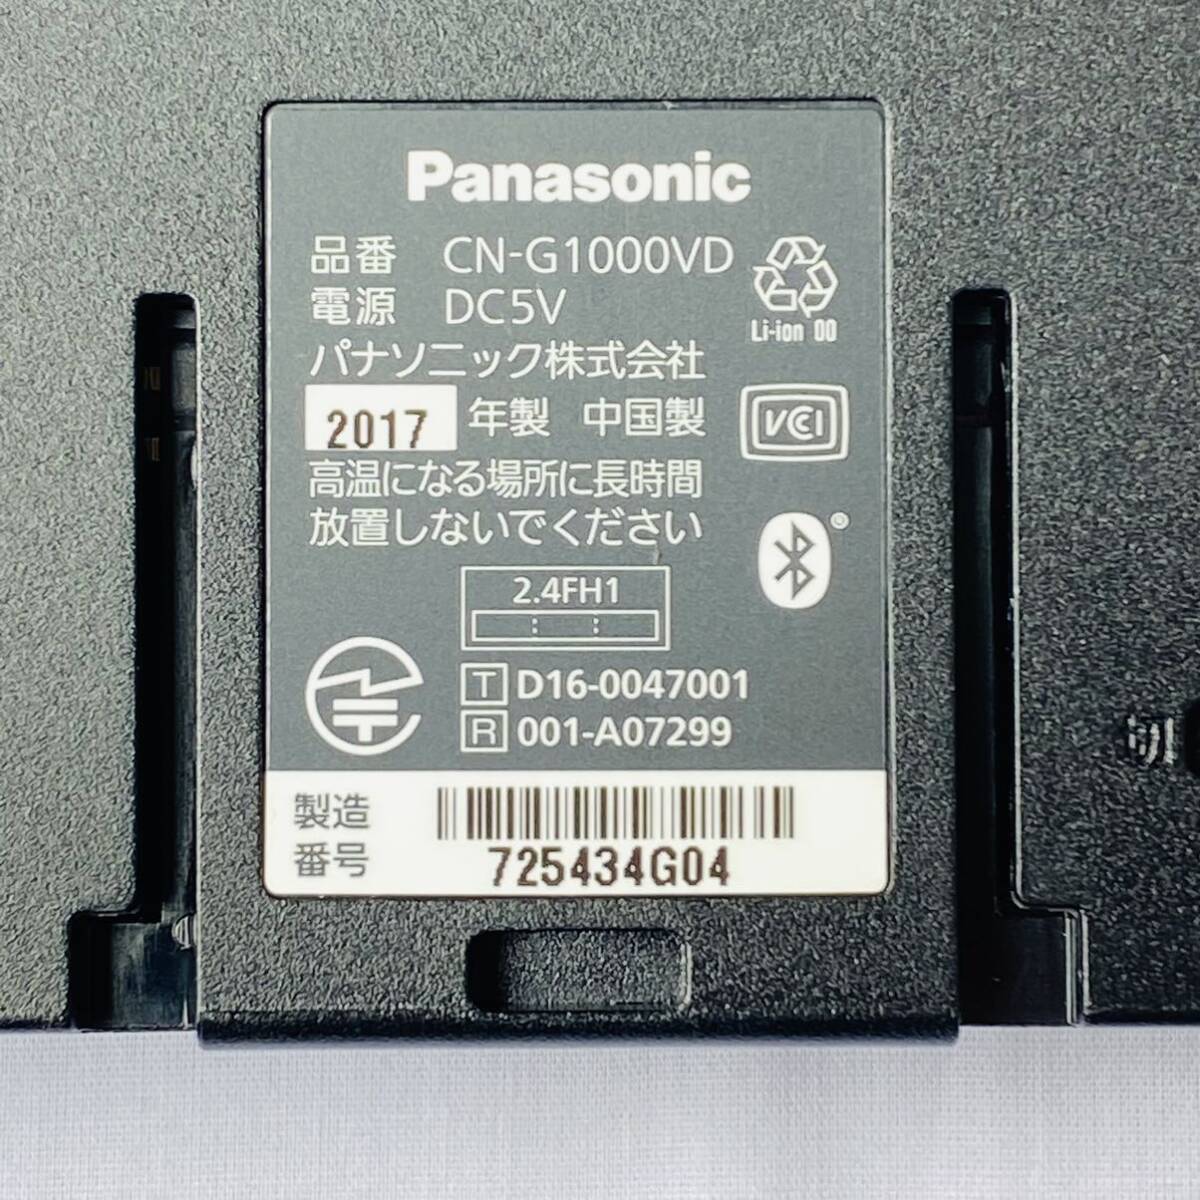 【送料無料】Panasonic パナソニックCN-G1000VD Gorilla ゴリラ SSDポータブルナビ 7V型 16GB 2017年製 ワンセグ 地図データ2019年 中古_画像7